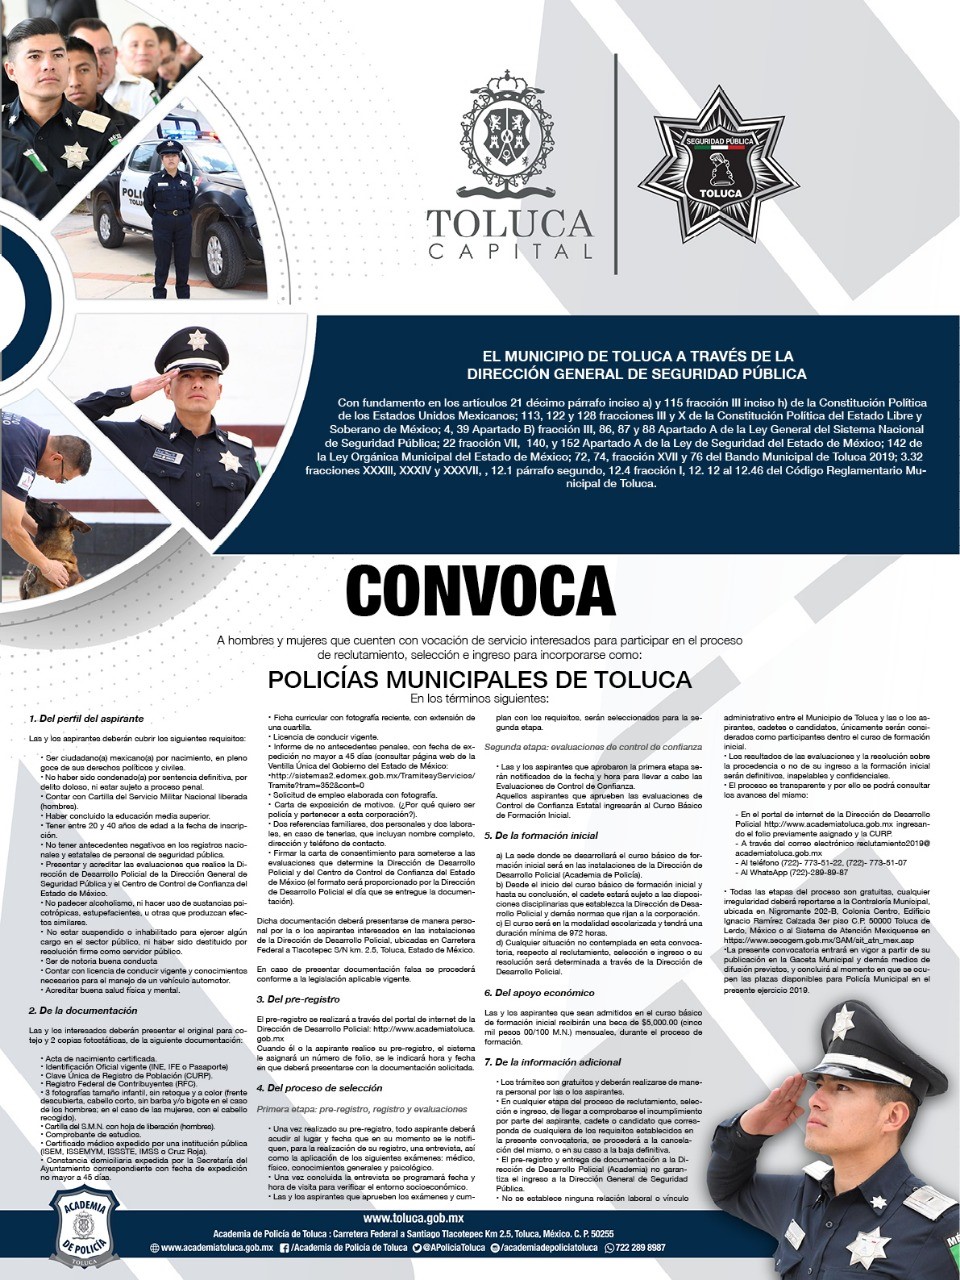 Continúa abierta la convocatoria para Policías Municipales de Toluca